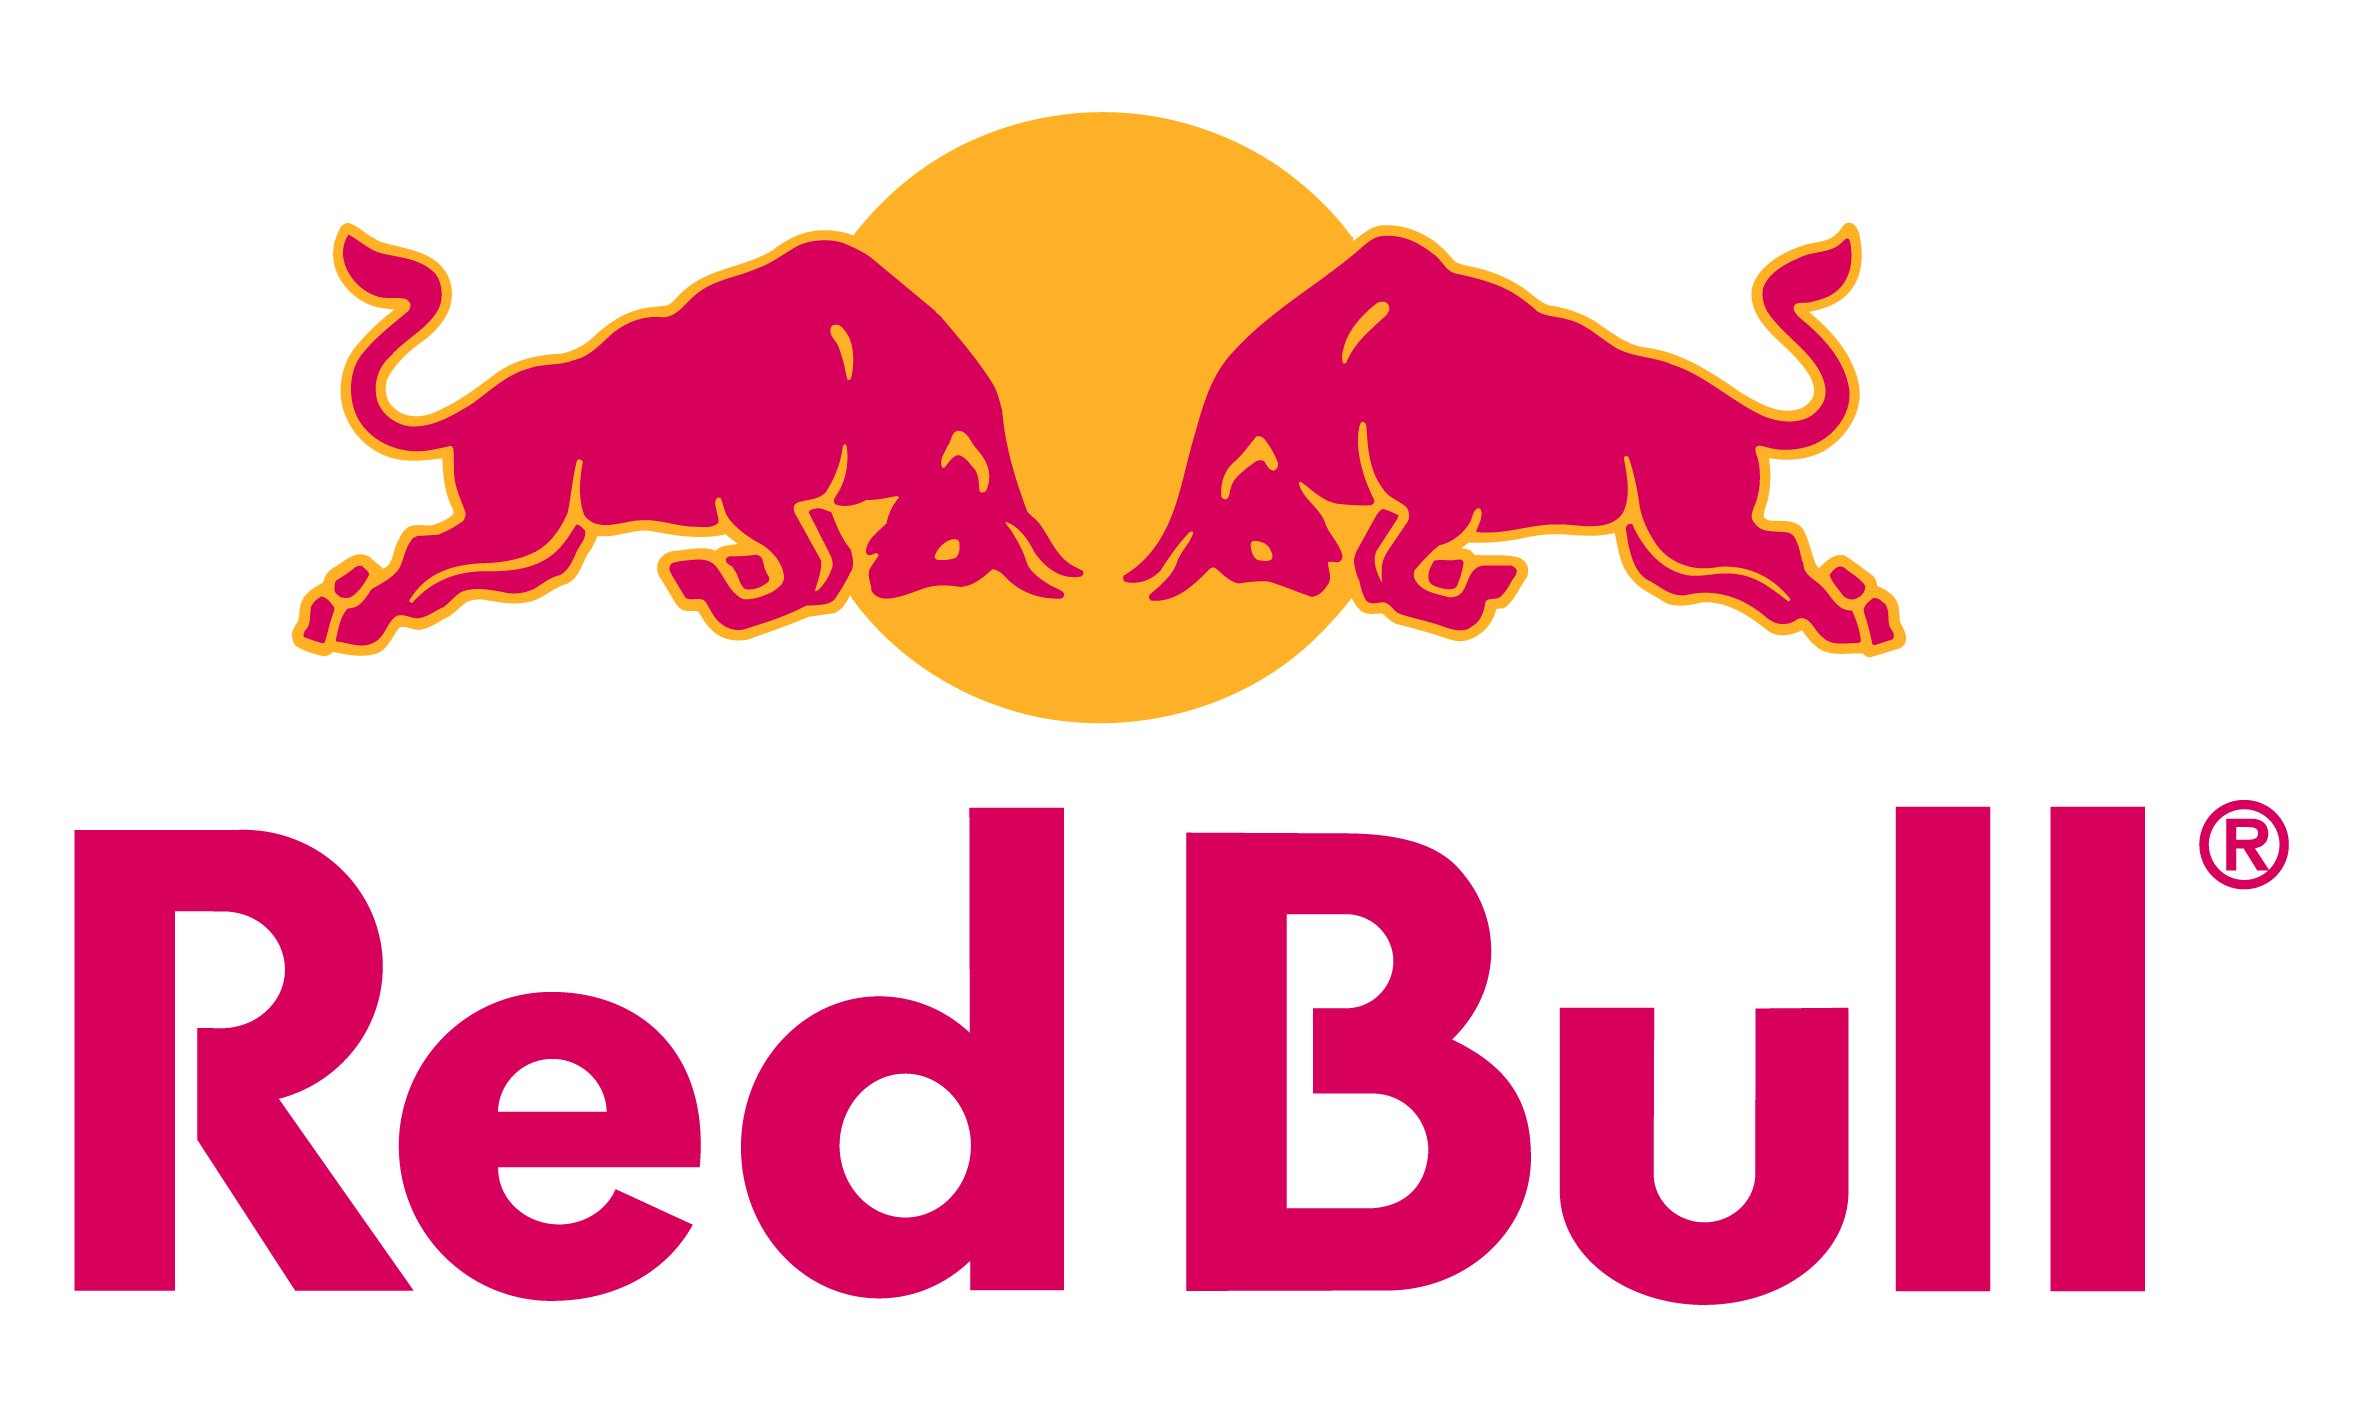 red-bull-logo.jpg